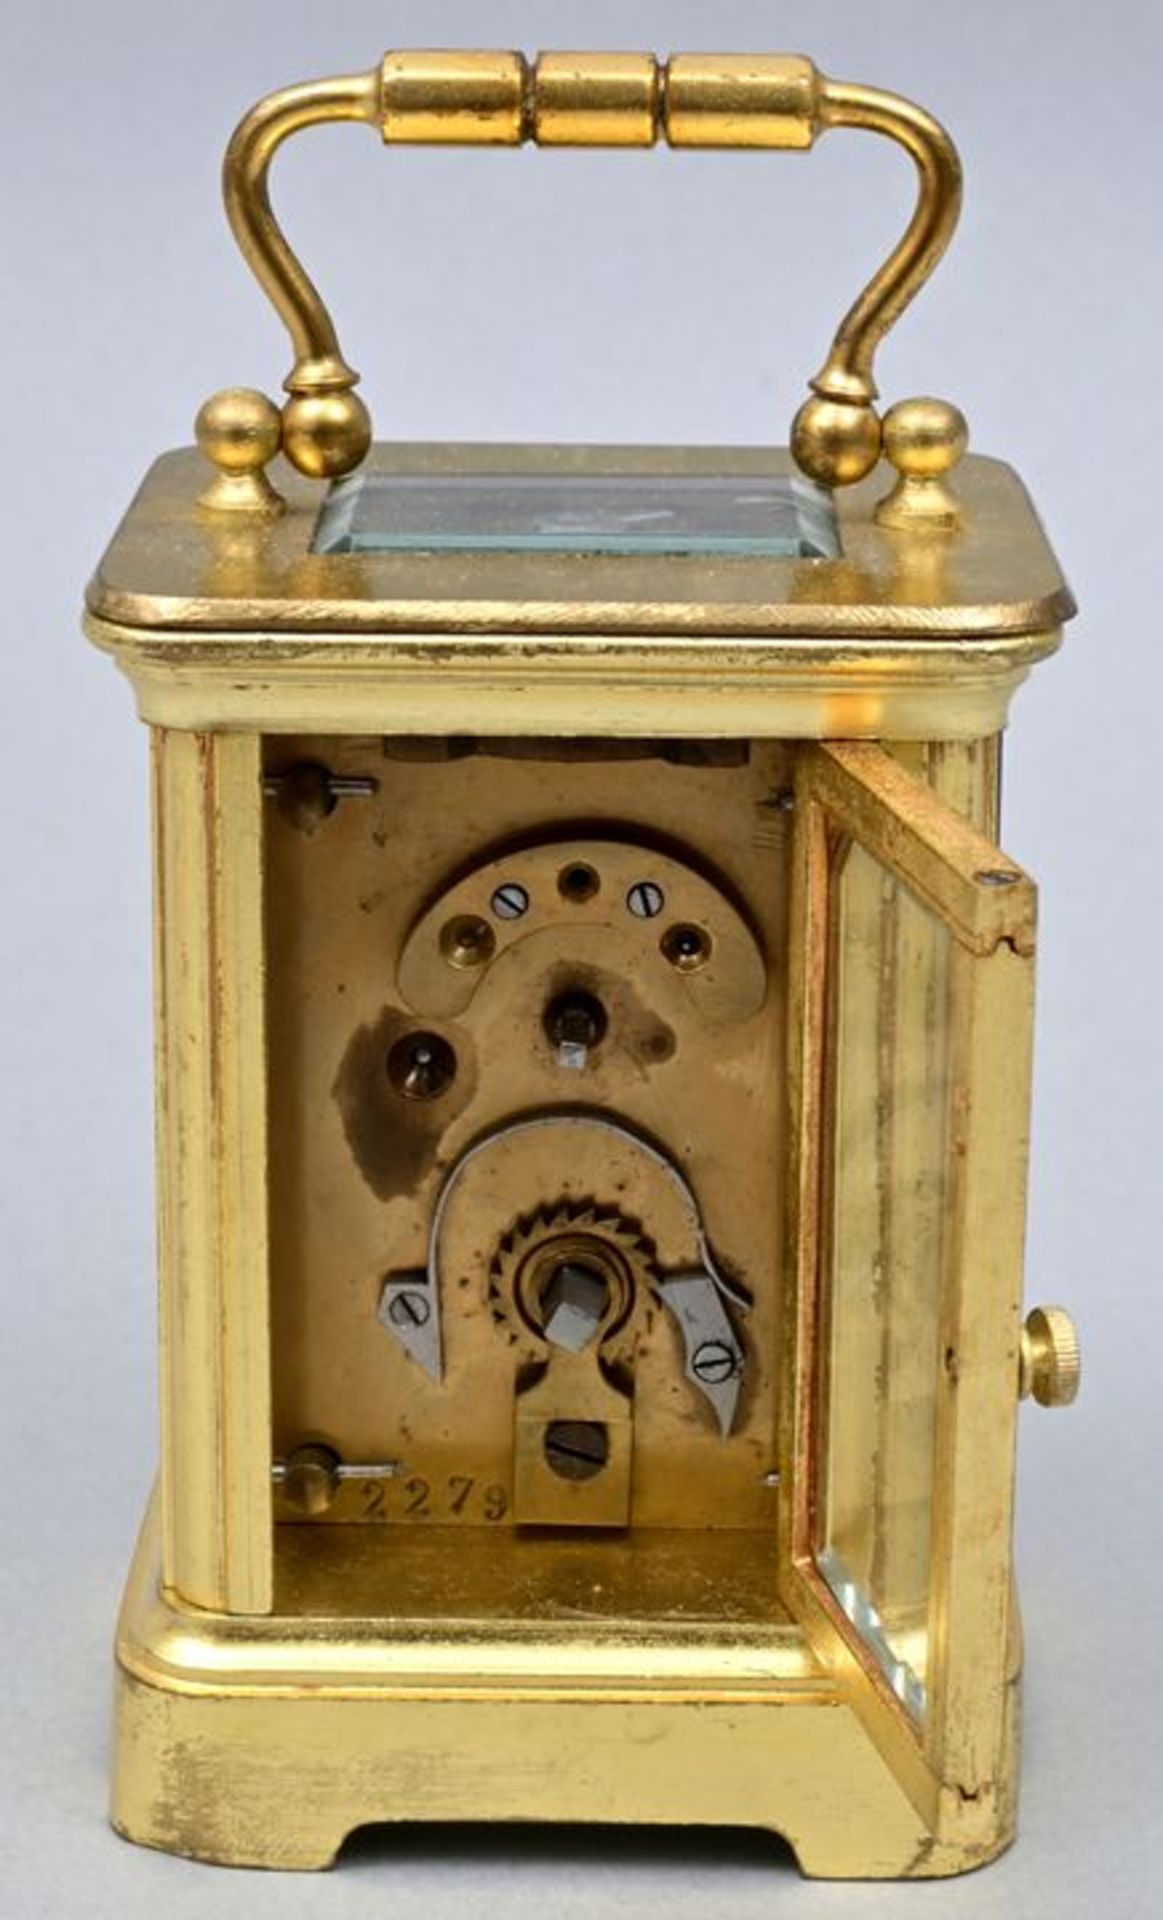 Reiseuhr klein / Small travel clock - Image 3 of 7